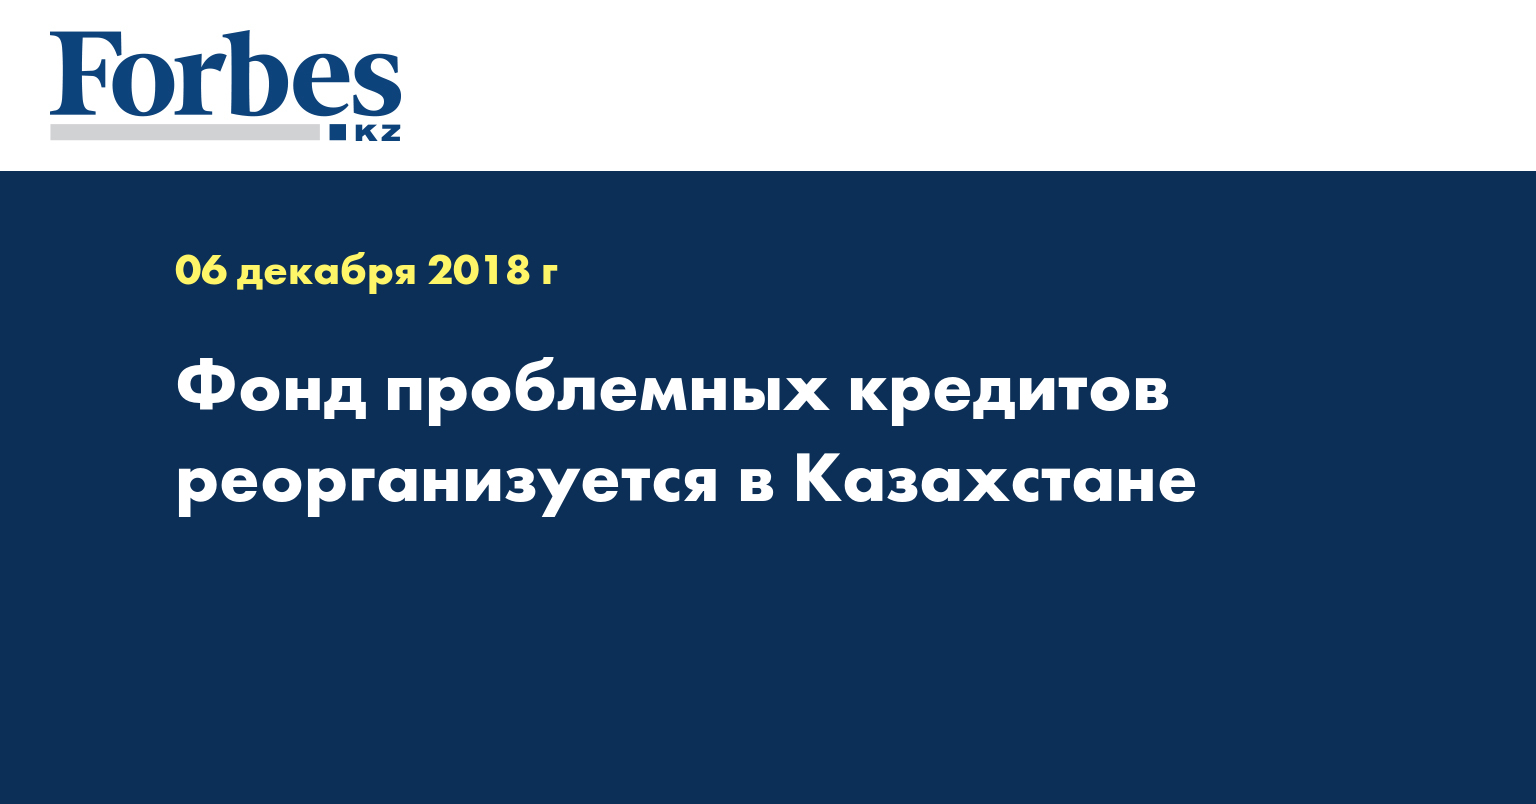 Фонд проблемных кредитов реорганизуется в Казахстане